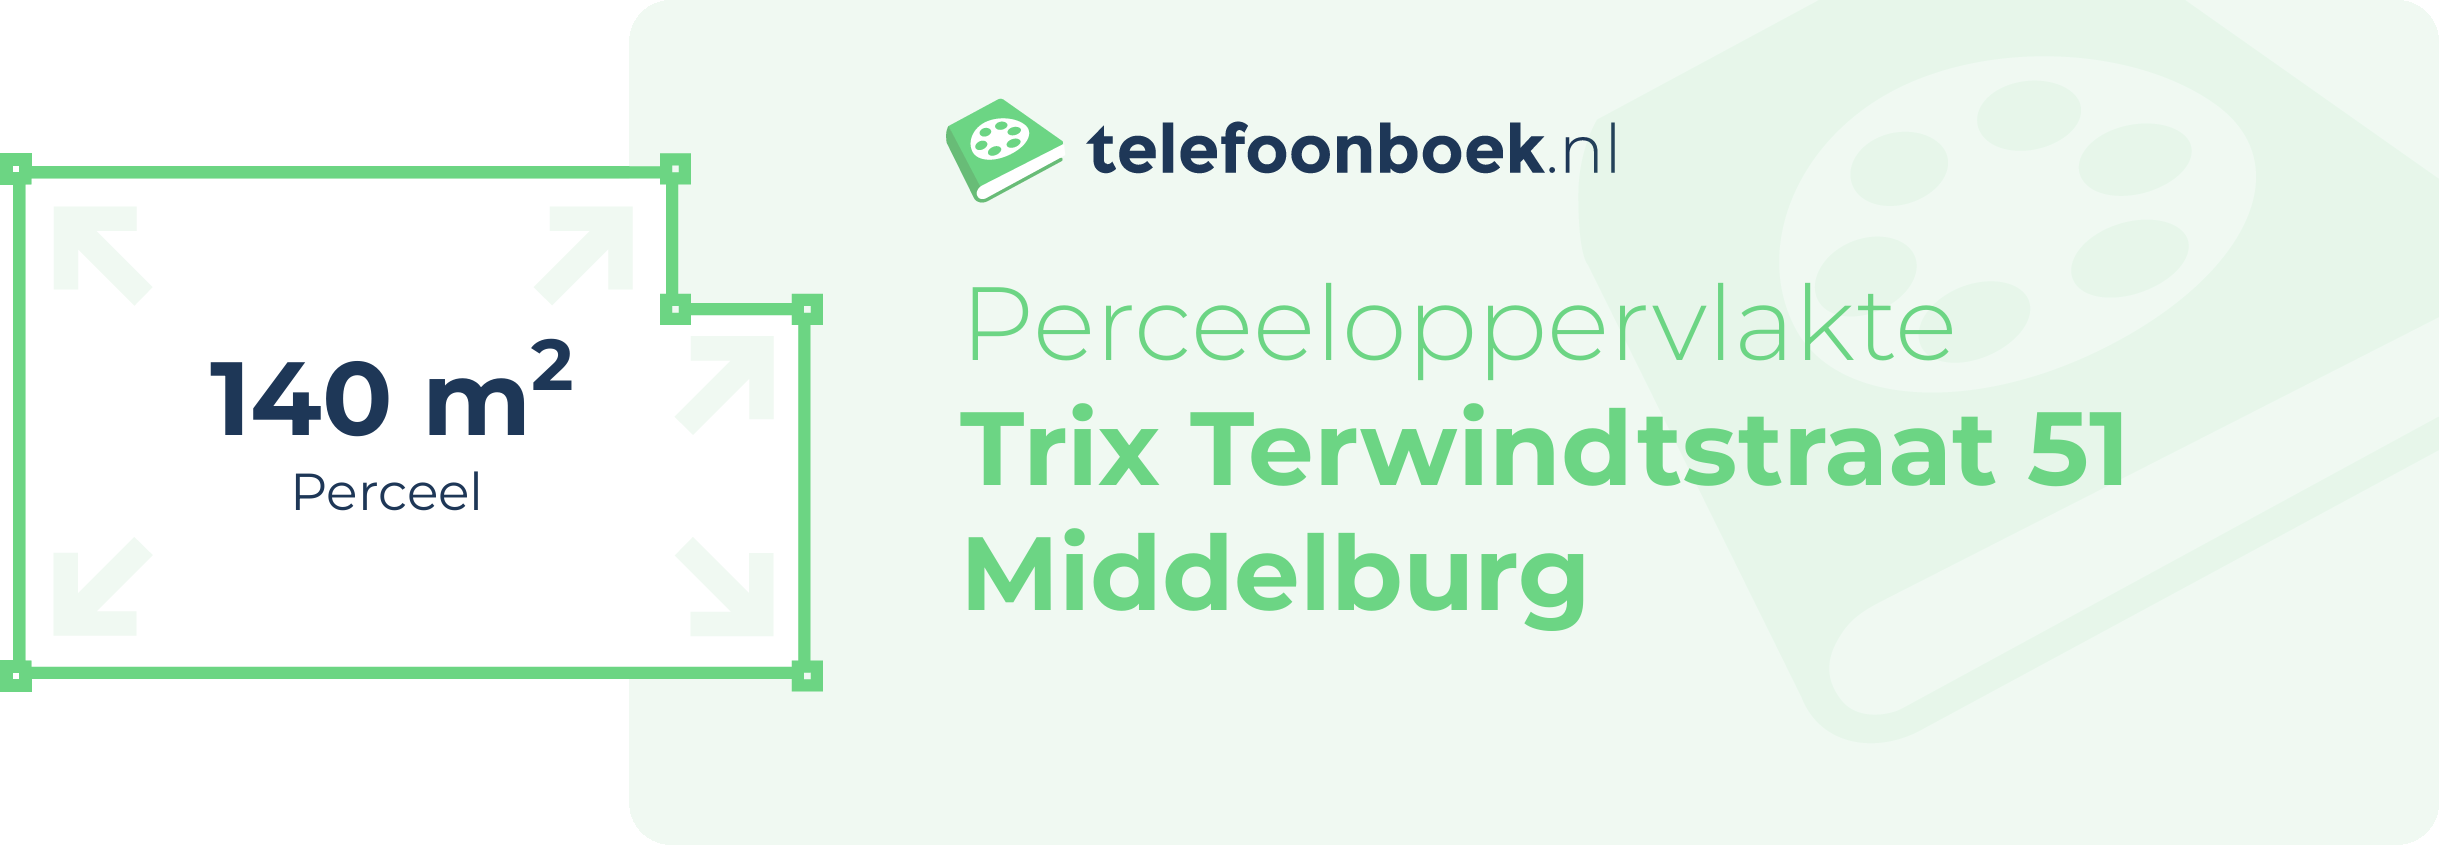 Perceeloppervlakte Trix Terwindtstraat 51 Middelburg